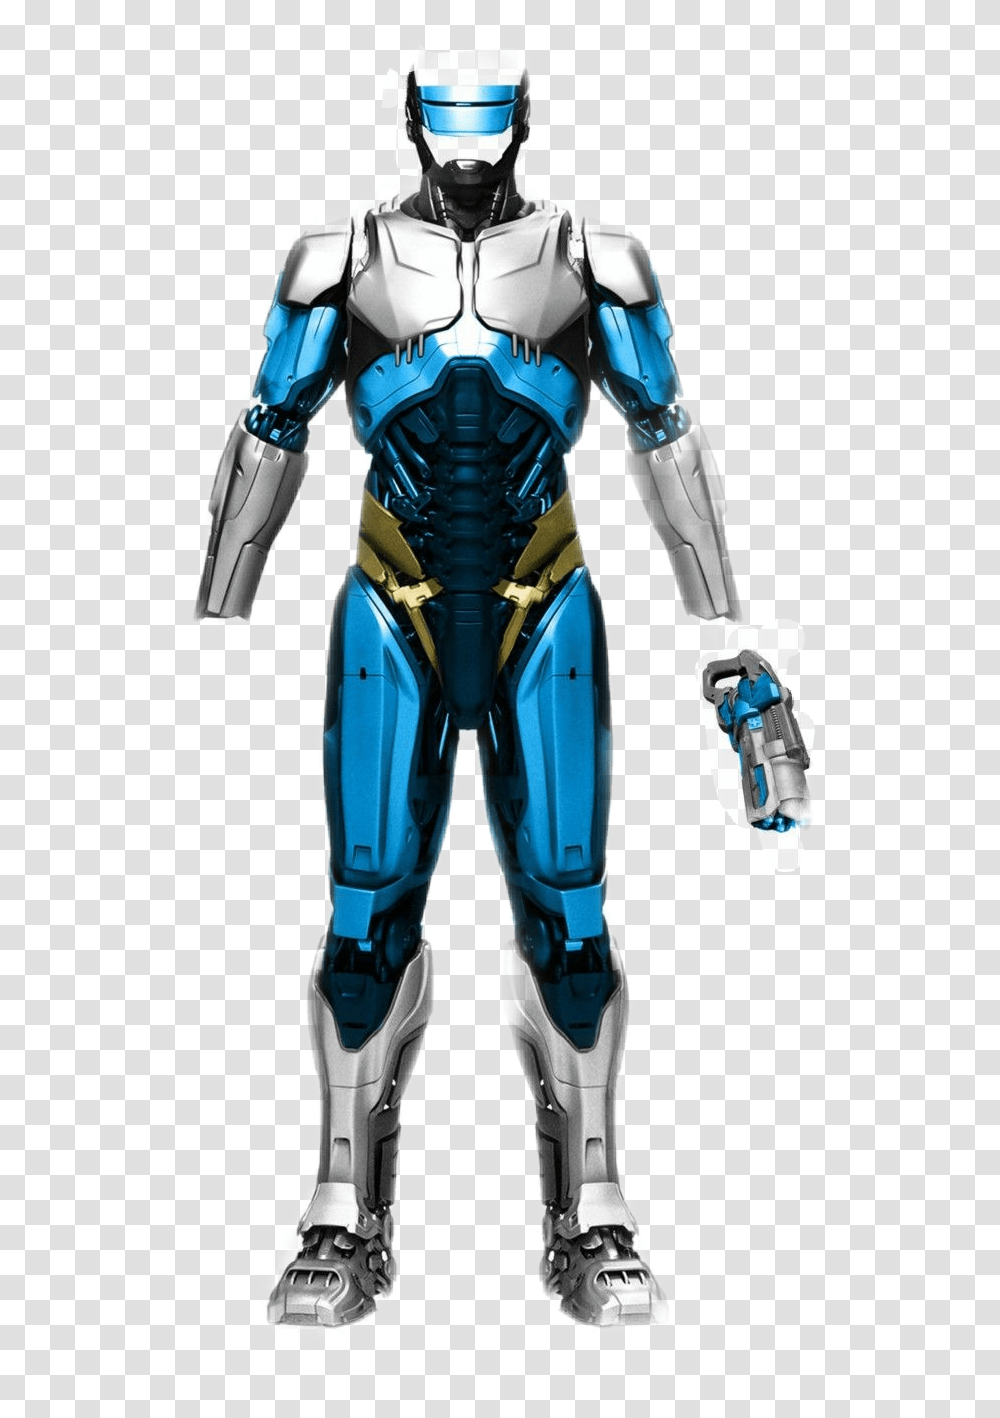 Dcextendeduniverse Captain Cold Concept Art, Robot, Person, Human, Armor Transparent Png